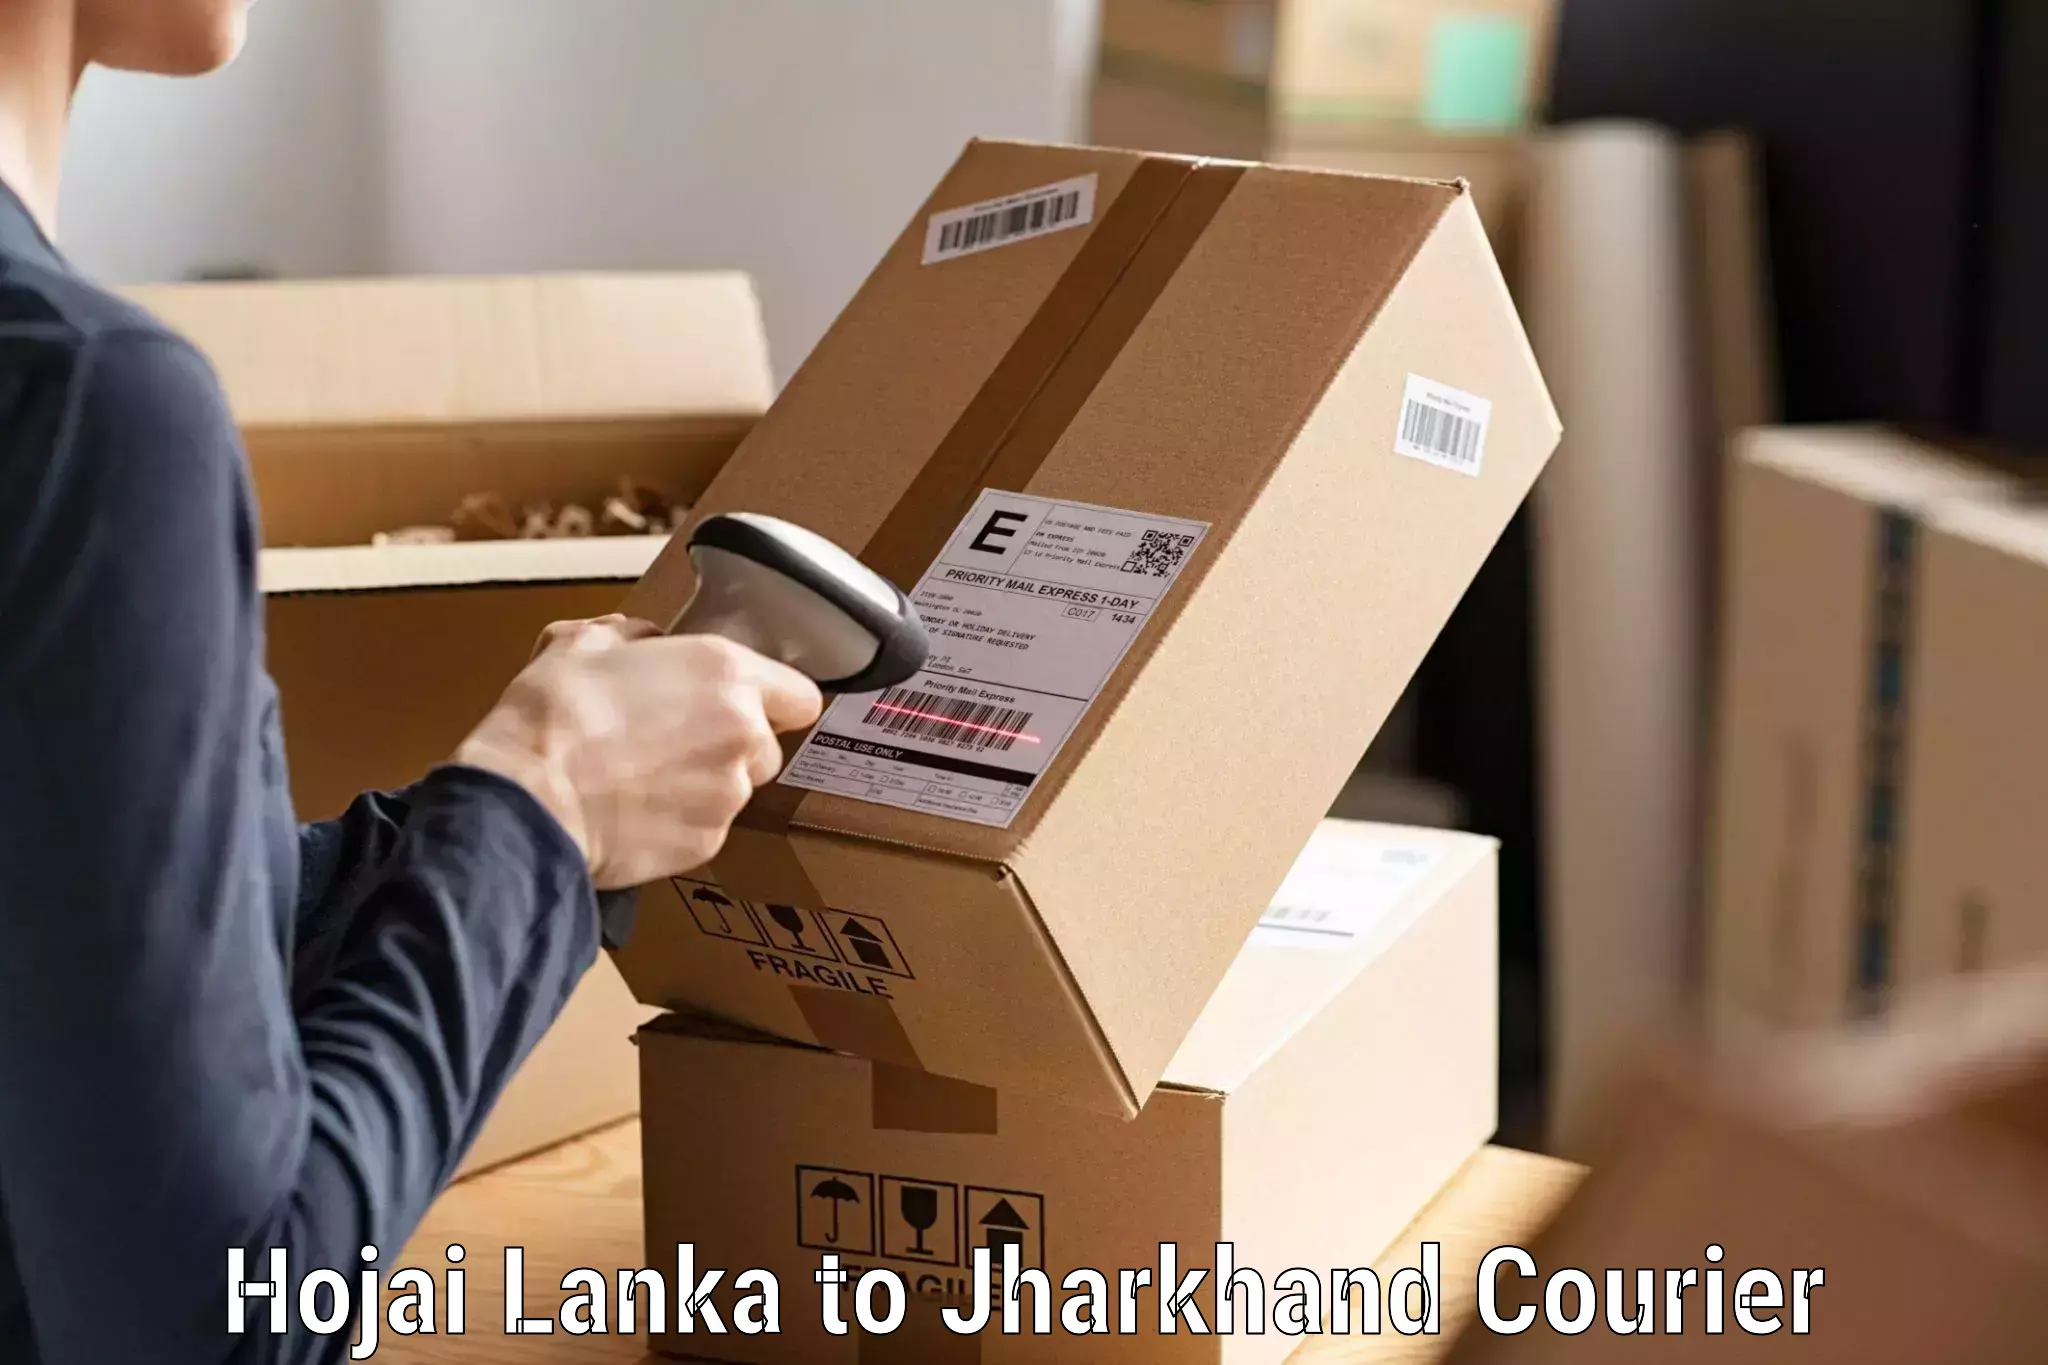 24-hour courier service Hojai Lanka to Doranda